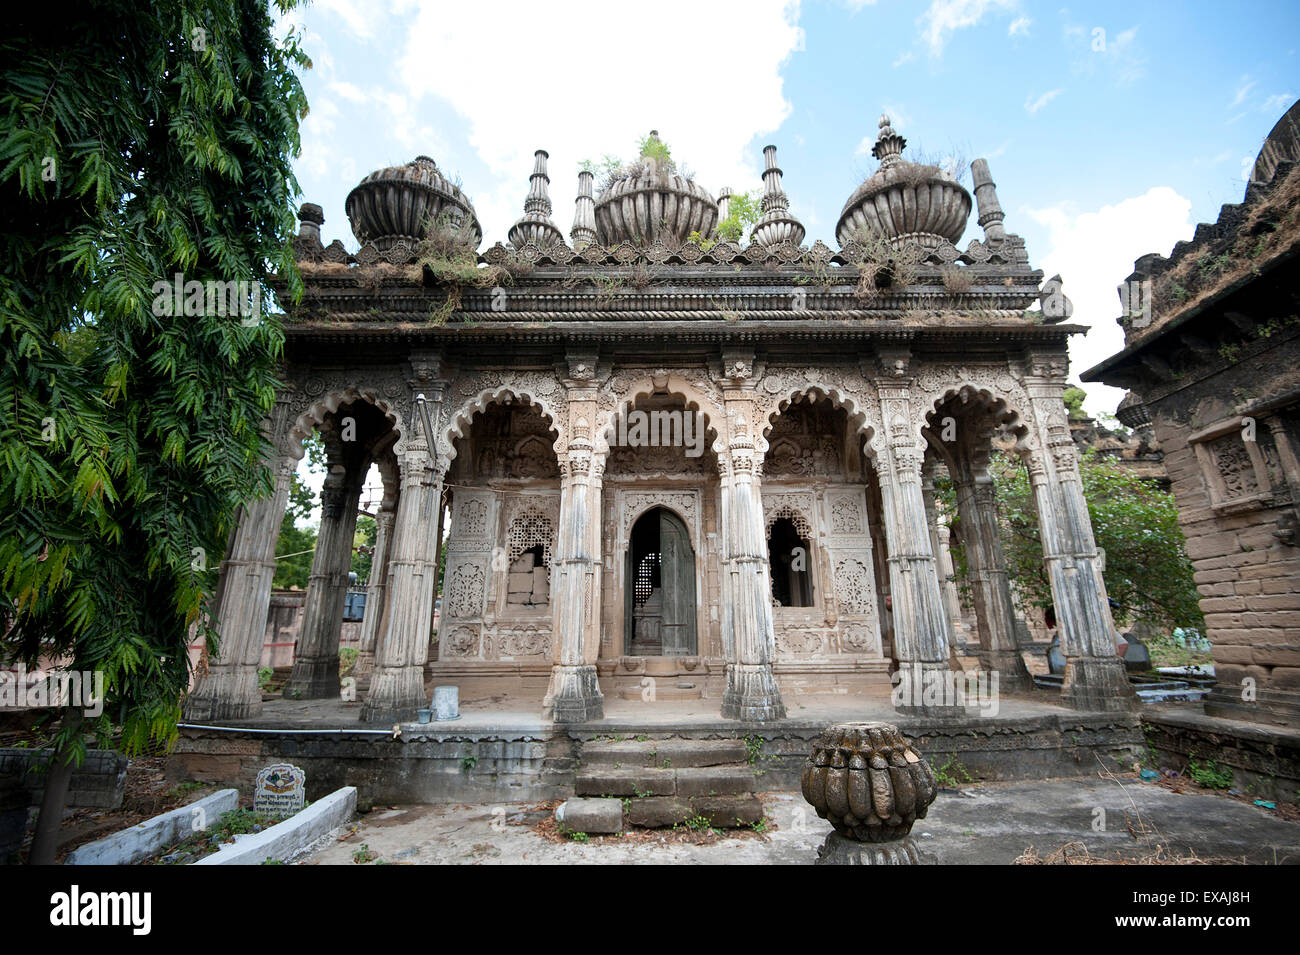 L'une des pierres du 18ème siècle sculpté richement mausolées, Babi dynastie, Tombes des rois, Babi Junagadh, Gujarat, Inde Banque D'Images